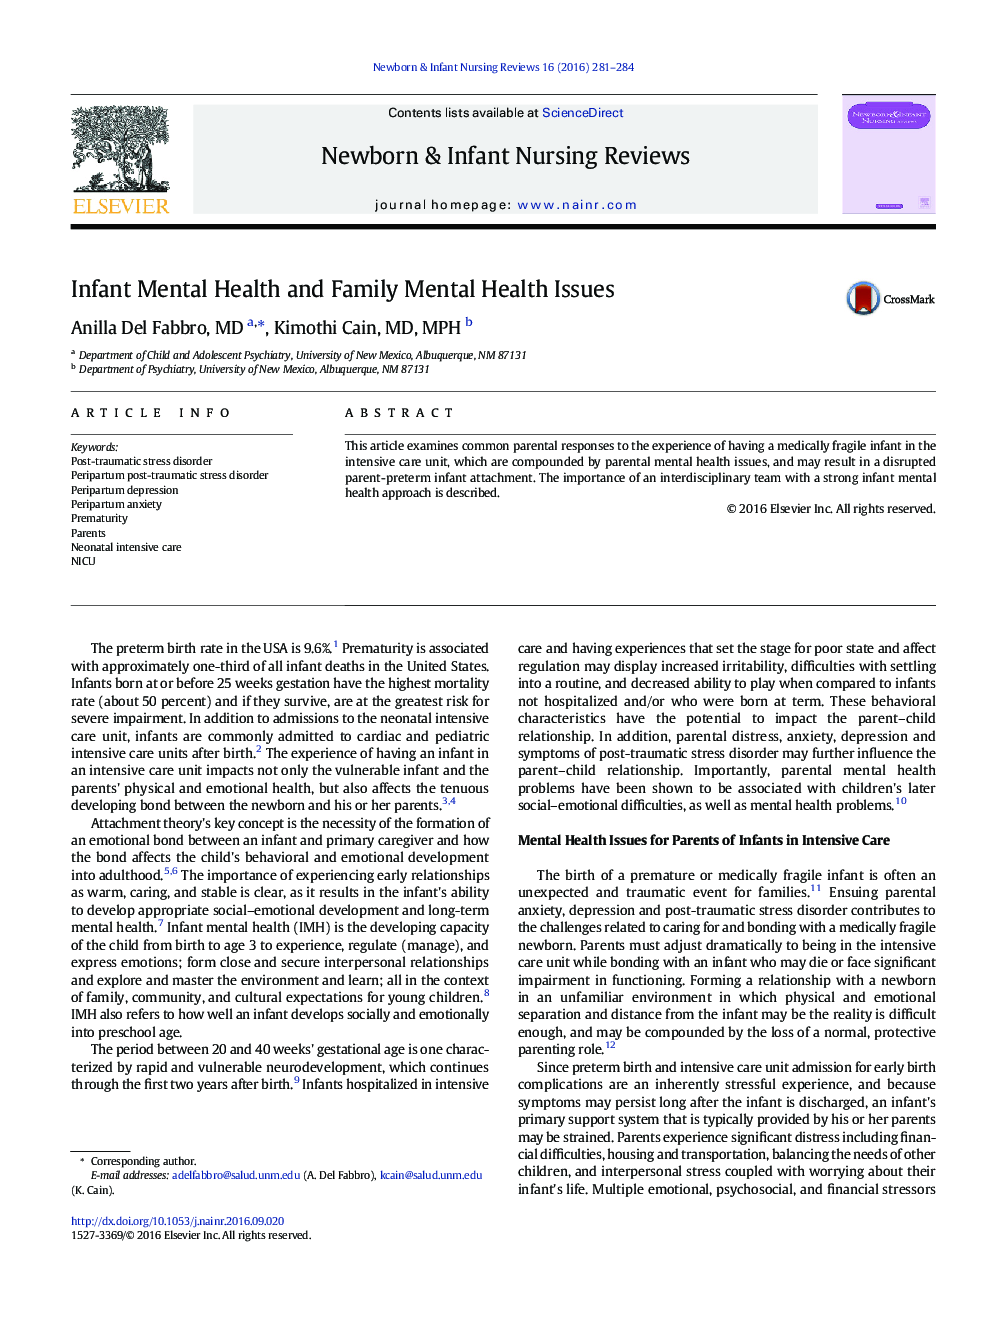 مقاله بهداشت روان و مسائل مربوط به بهداشت روانی خانواده 